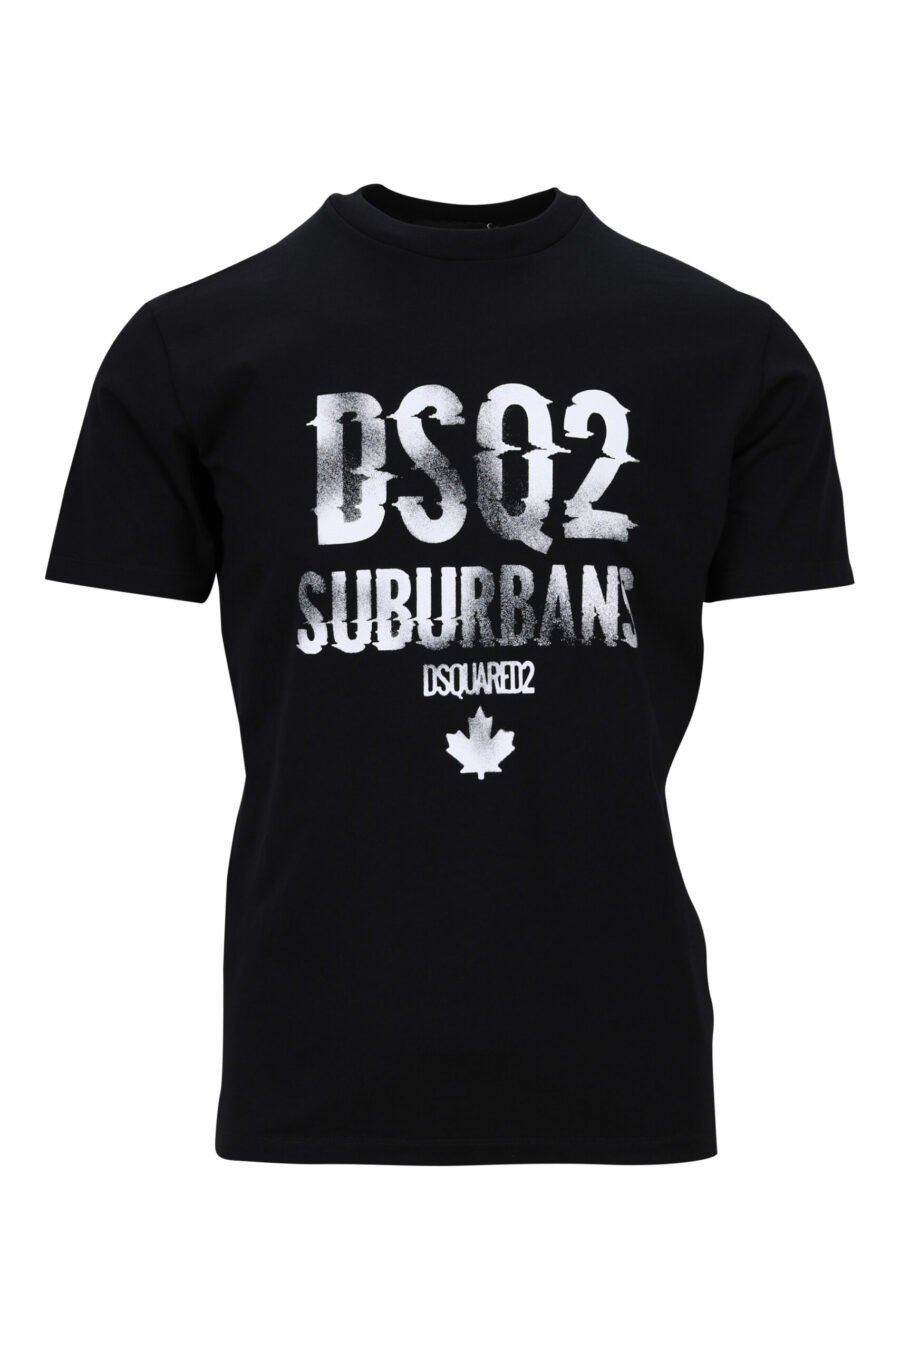 Schwarzes T-Shirt mit weißem "suburbans" Maxilogo - 8054148503932 skaliert